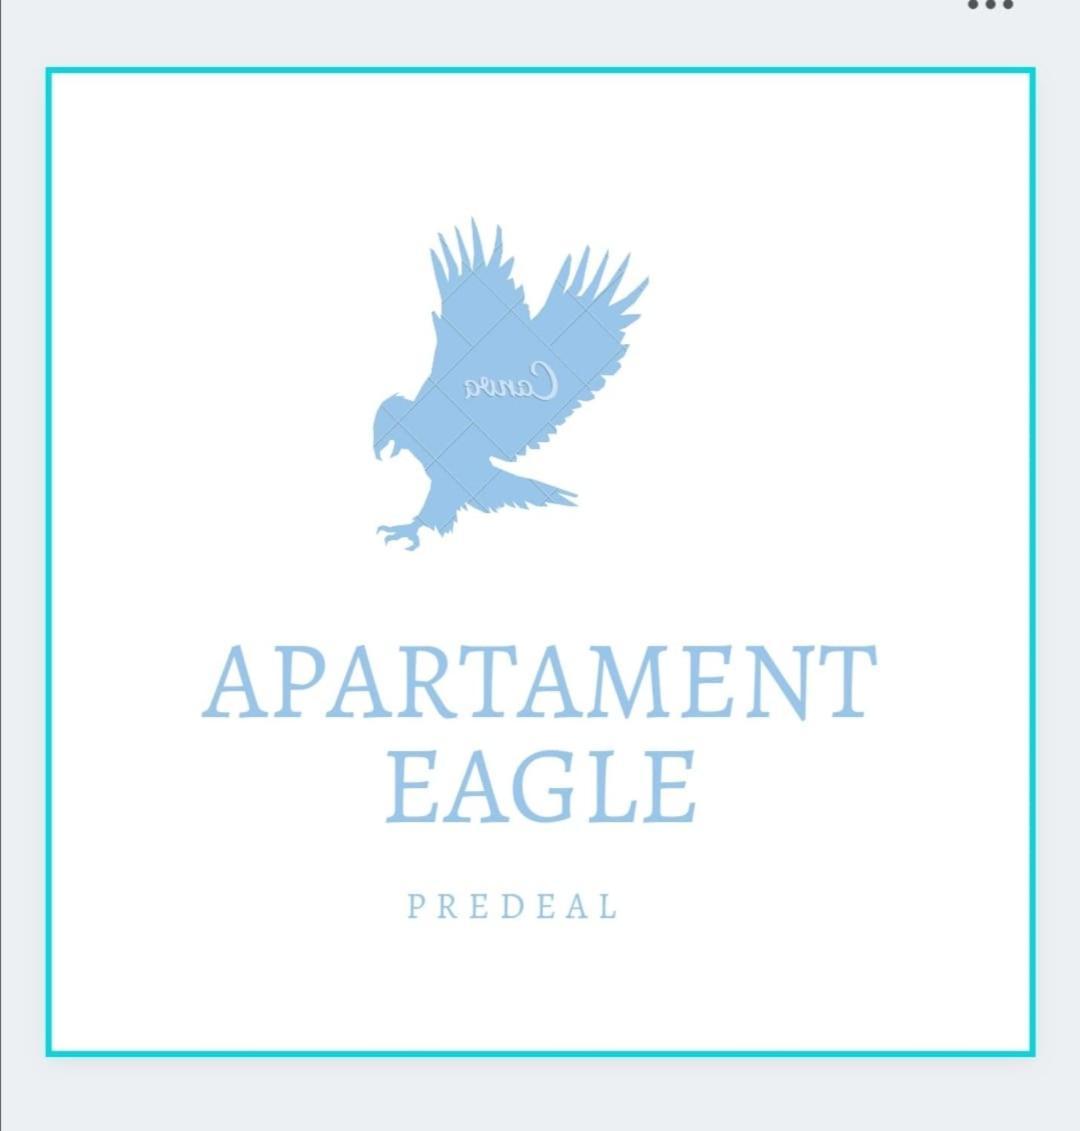 Apartament Eagle